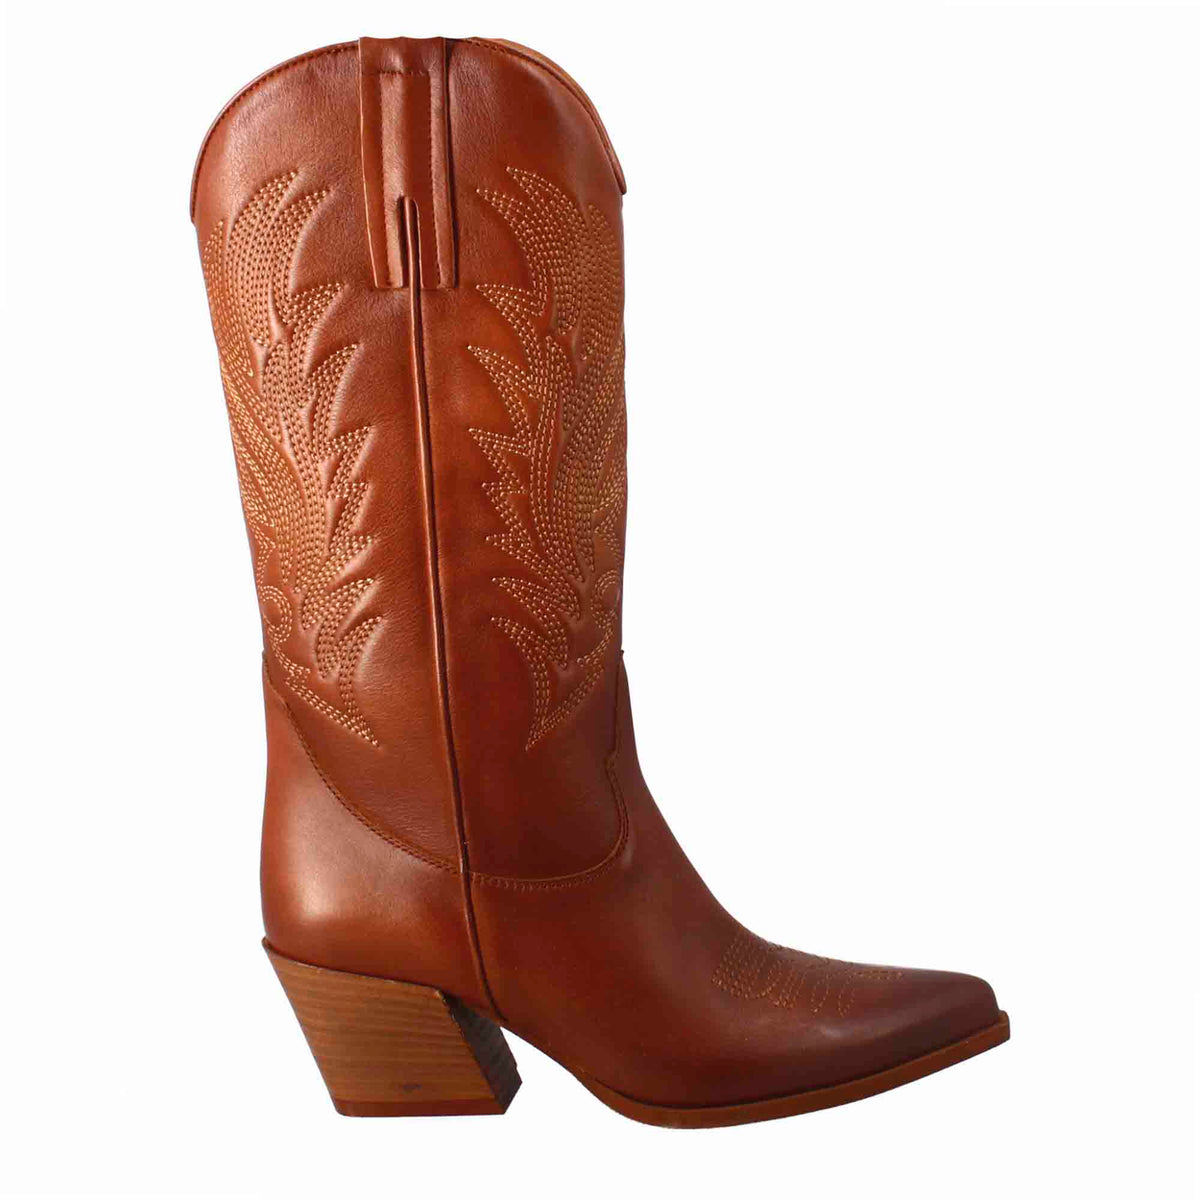 Bottes texanes moyennes pour femme en cuir marron avec broderie.